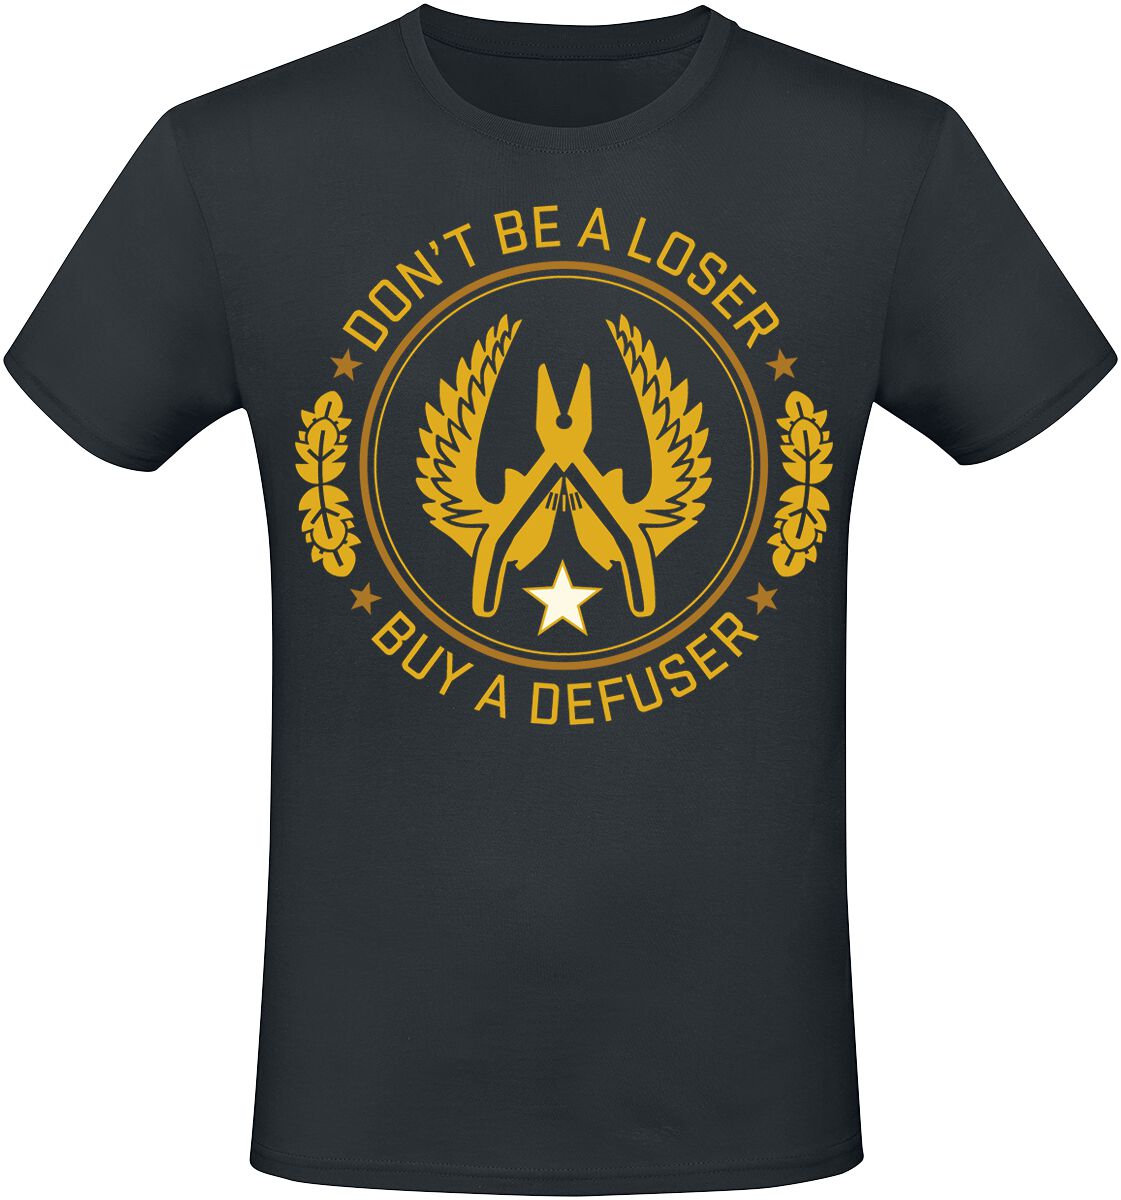 Counter-Strike - Gaming T-Shirt - 2 - Defuser - S bis XXL - für Männer - Größe L - schwarz  - EMP exklusives Merchandise!